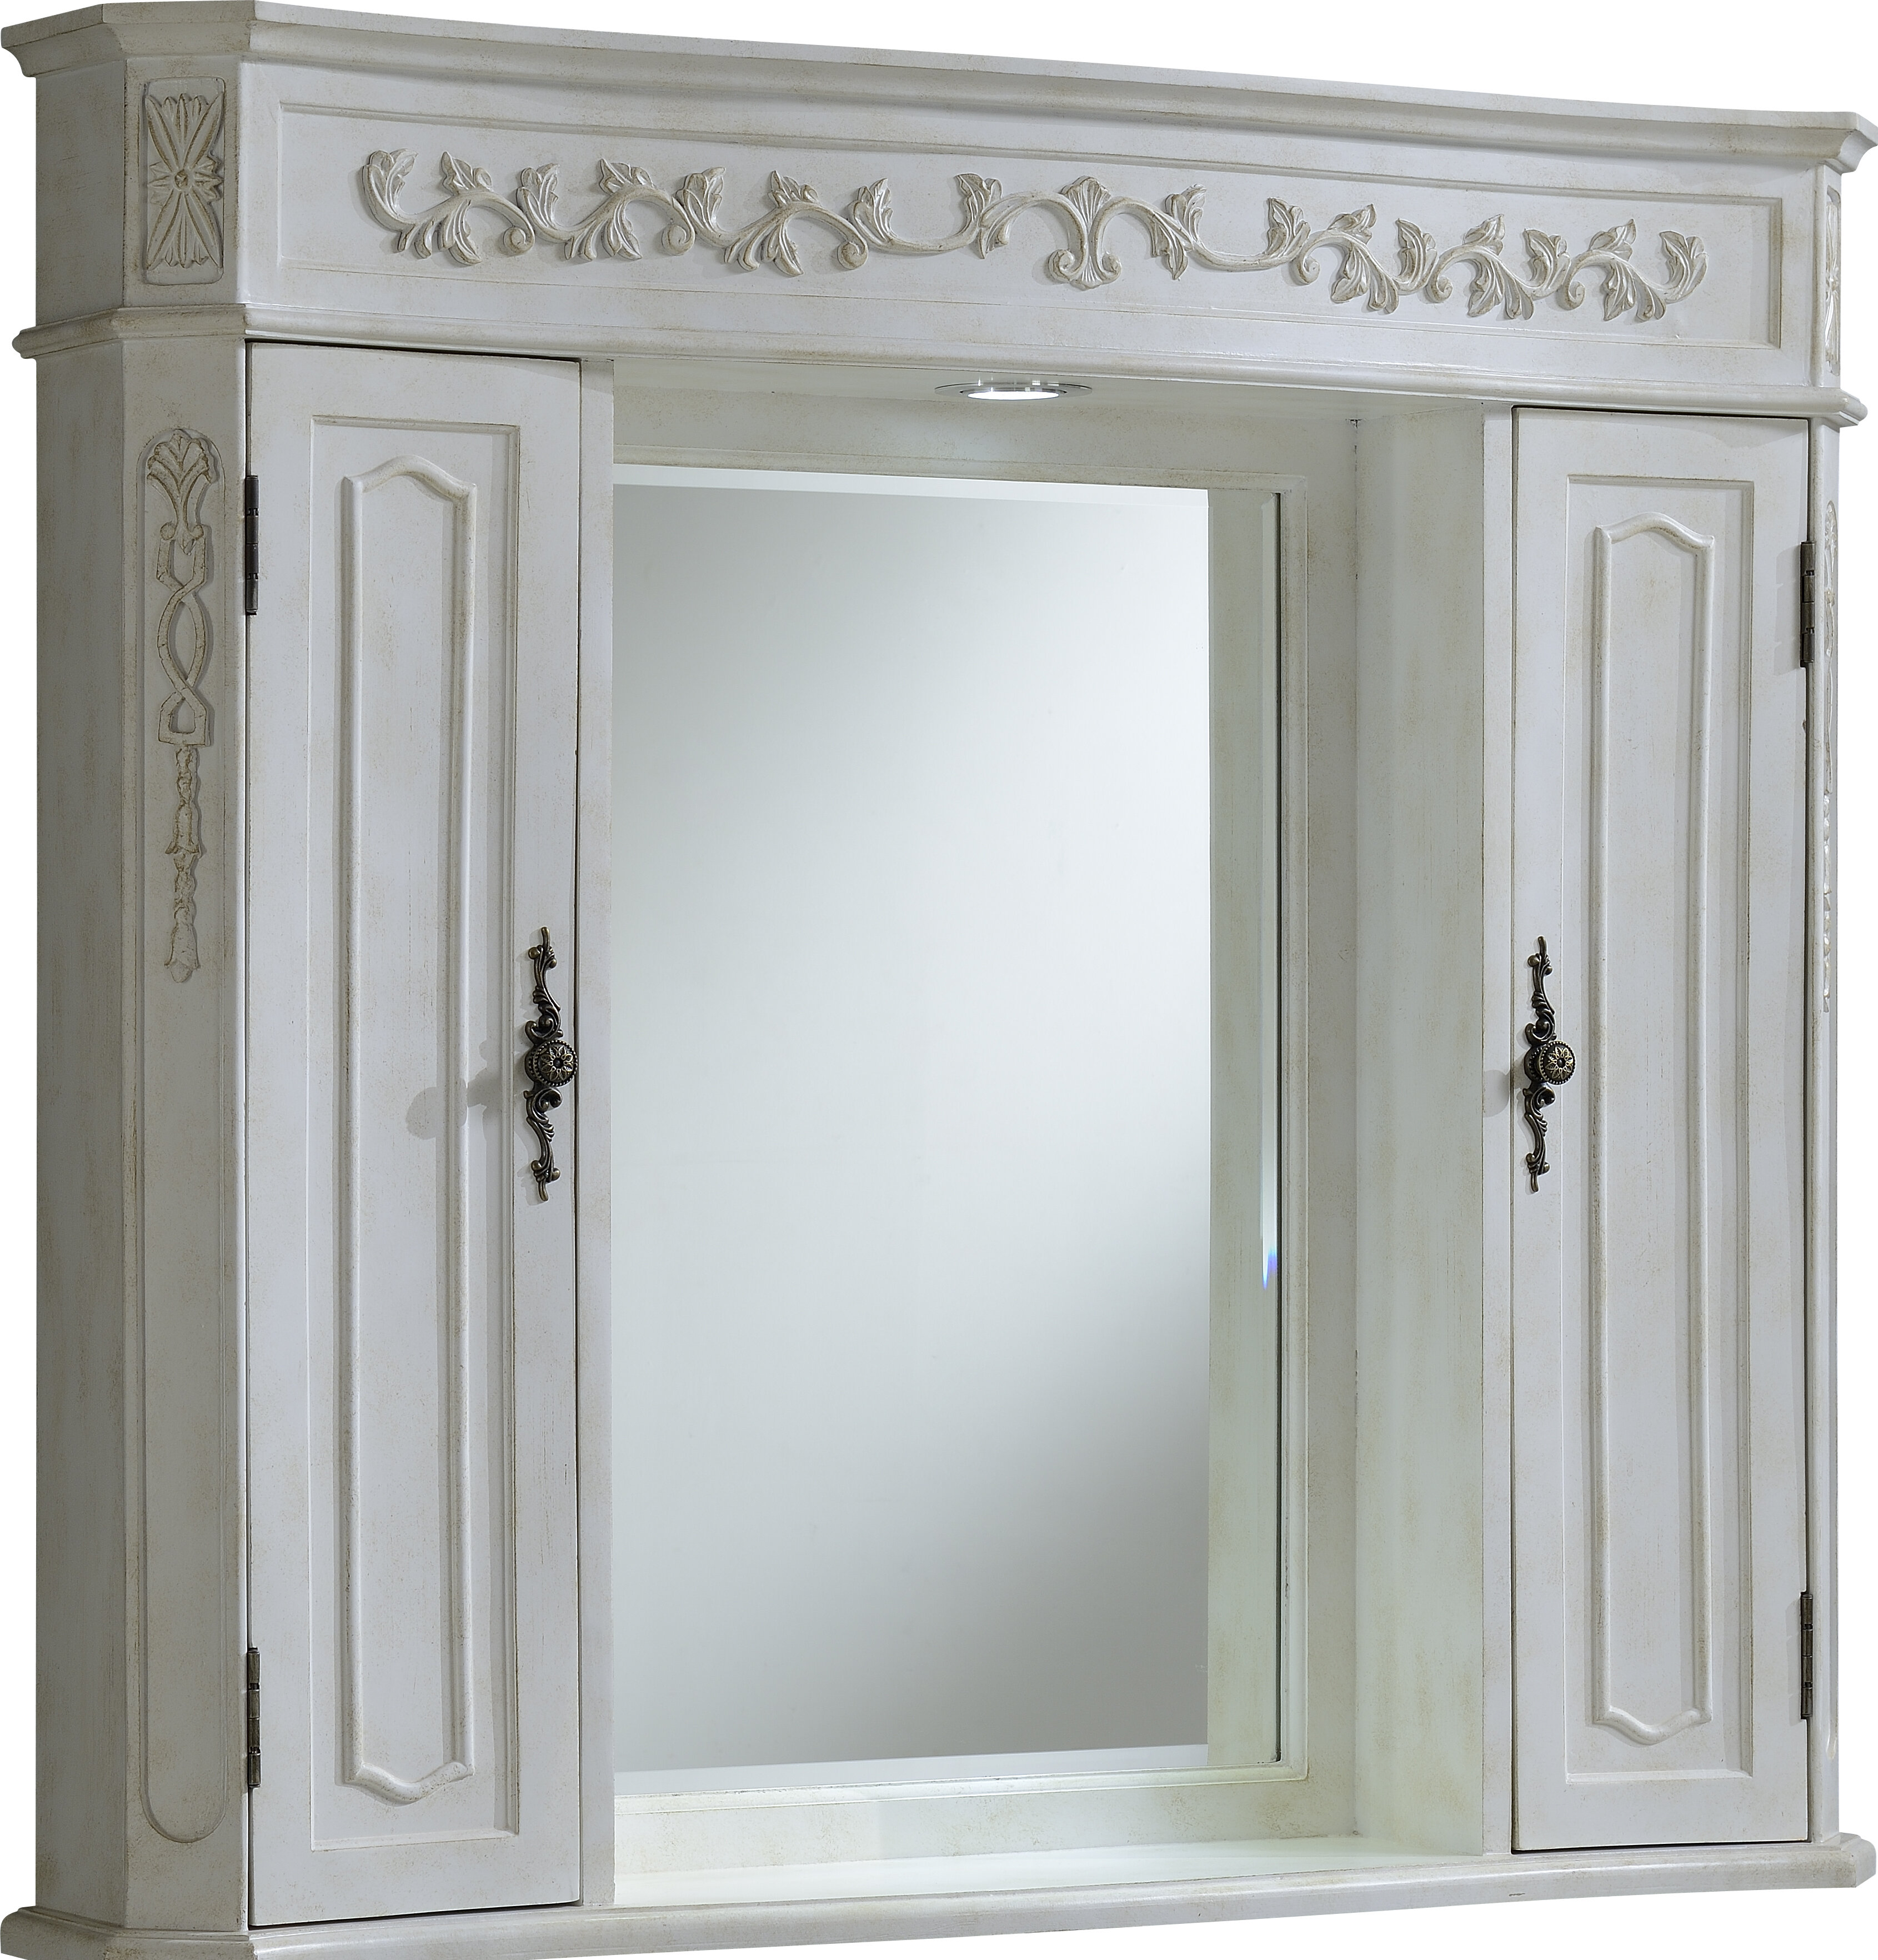 Lark Manor E37F442A8A2142B59DE1FD1A700F209A Alyxandrea Surface Mount Framed 1 of Doors Medicine Cabinet with 2 Adjustable Shelves Finish: White